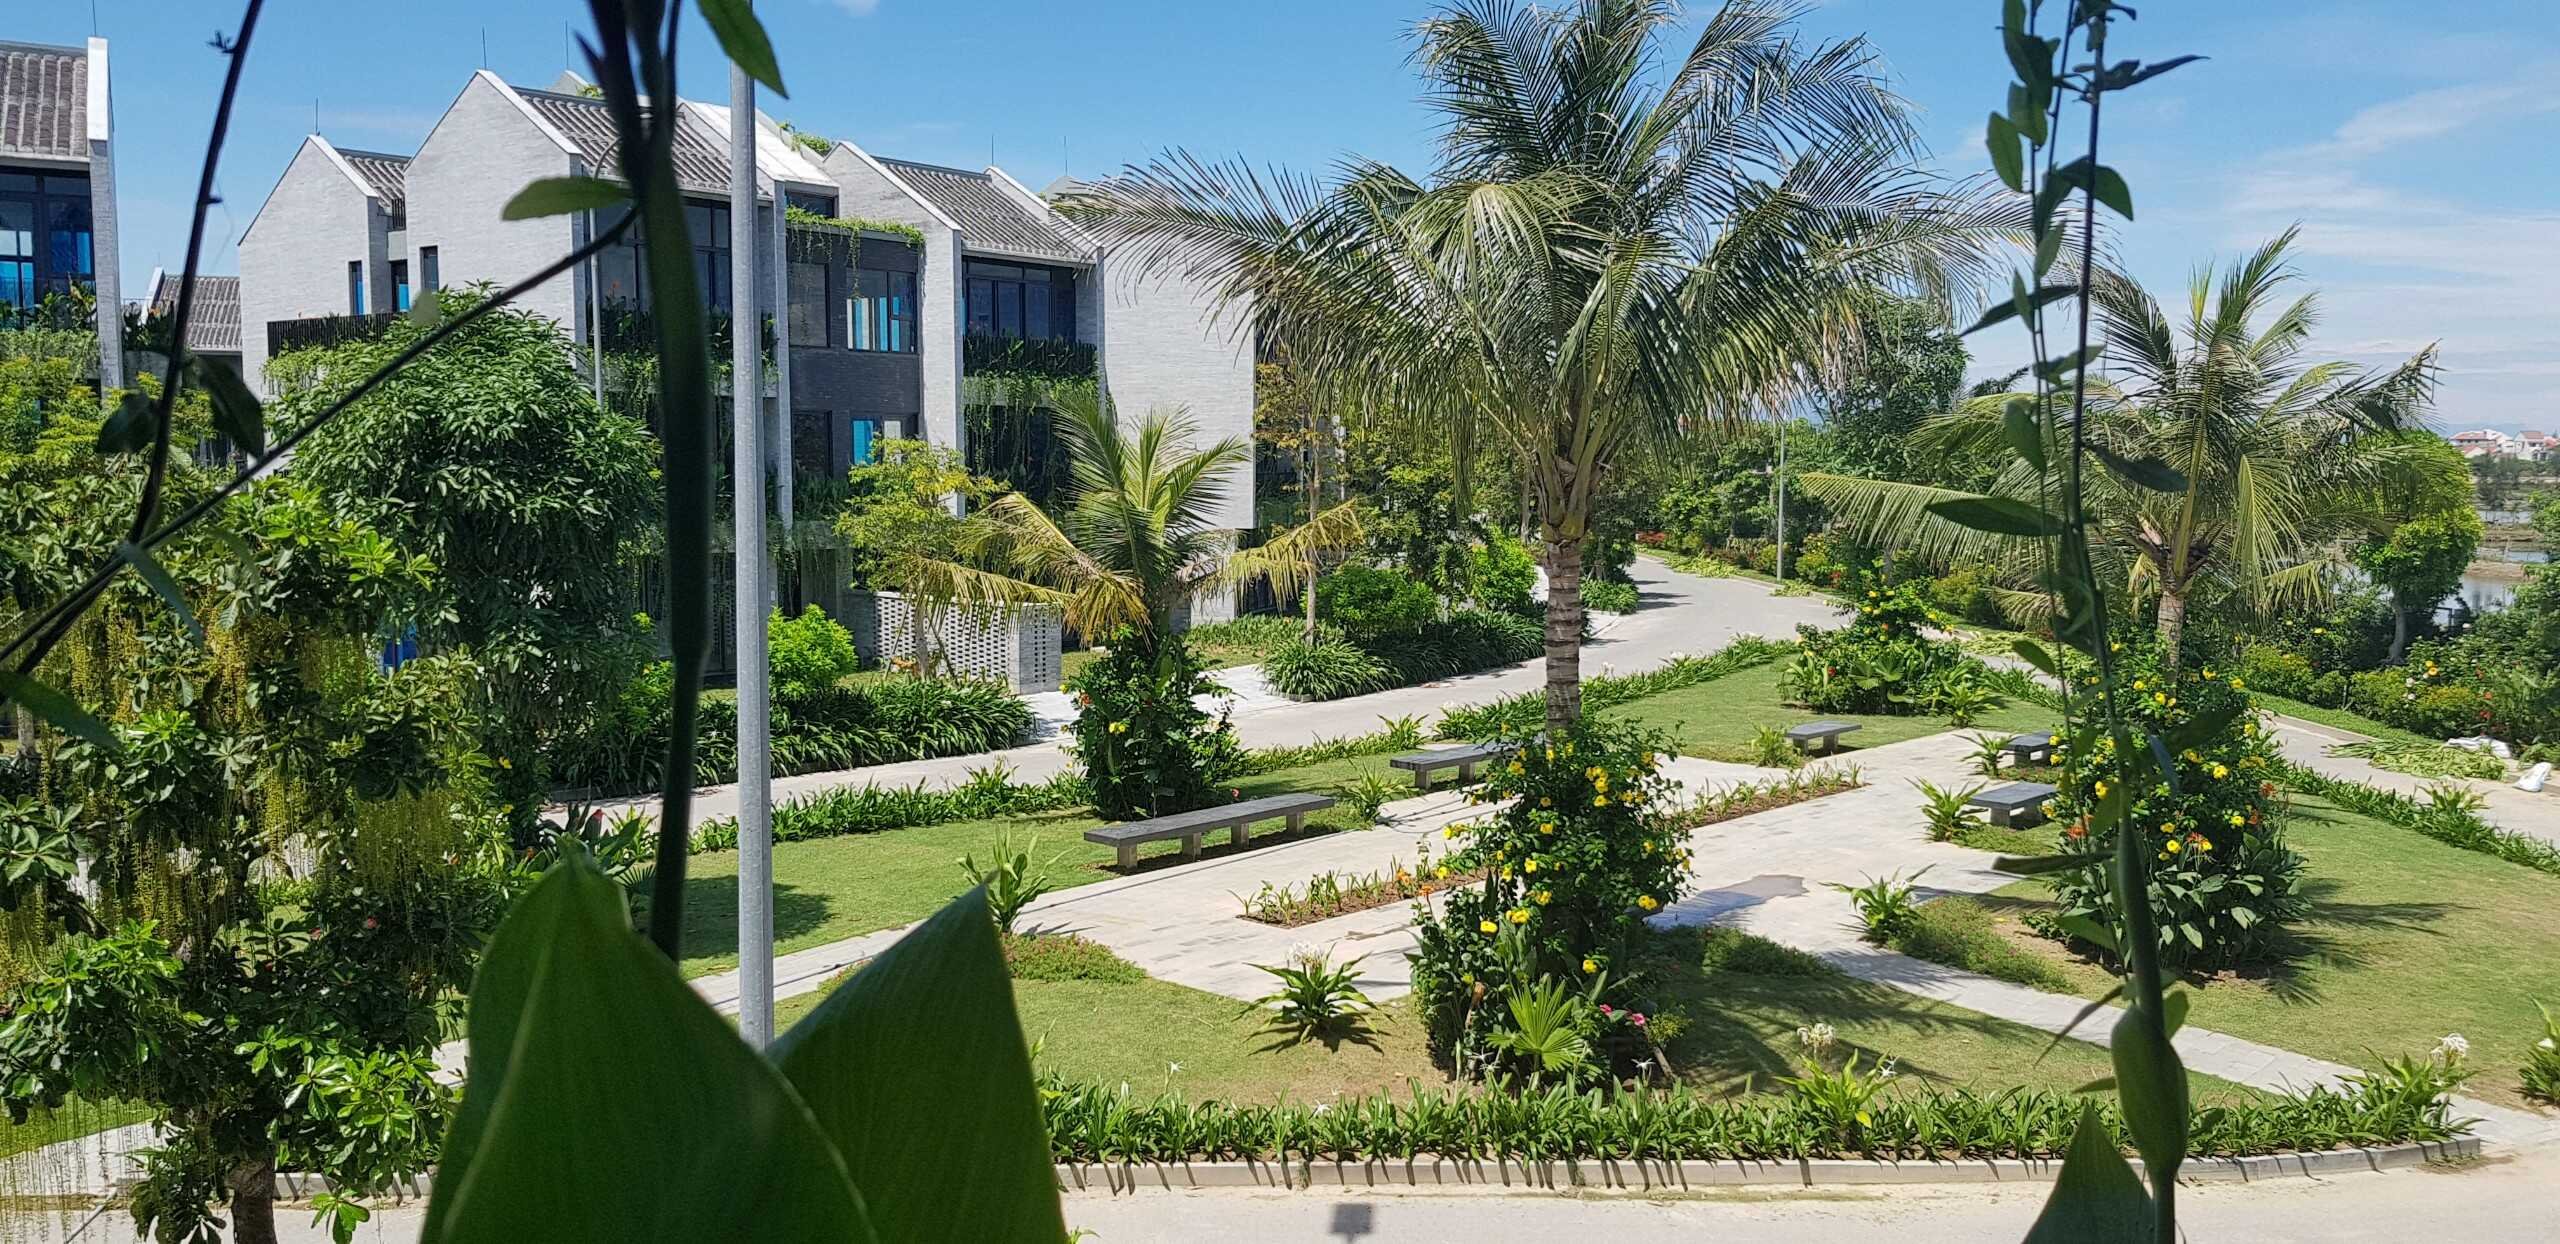 Chào bán căn biệt thự Casamia Hội An song lập 5 có khuôn viên vườn riêng - Ảnh 6